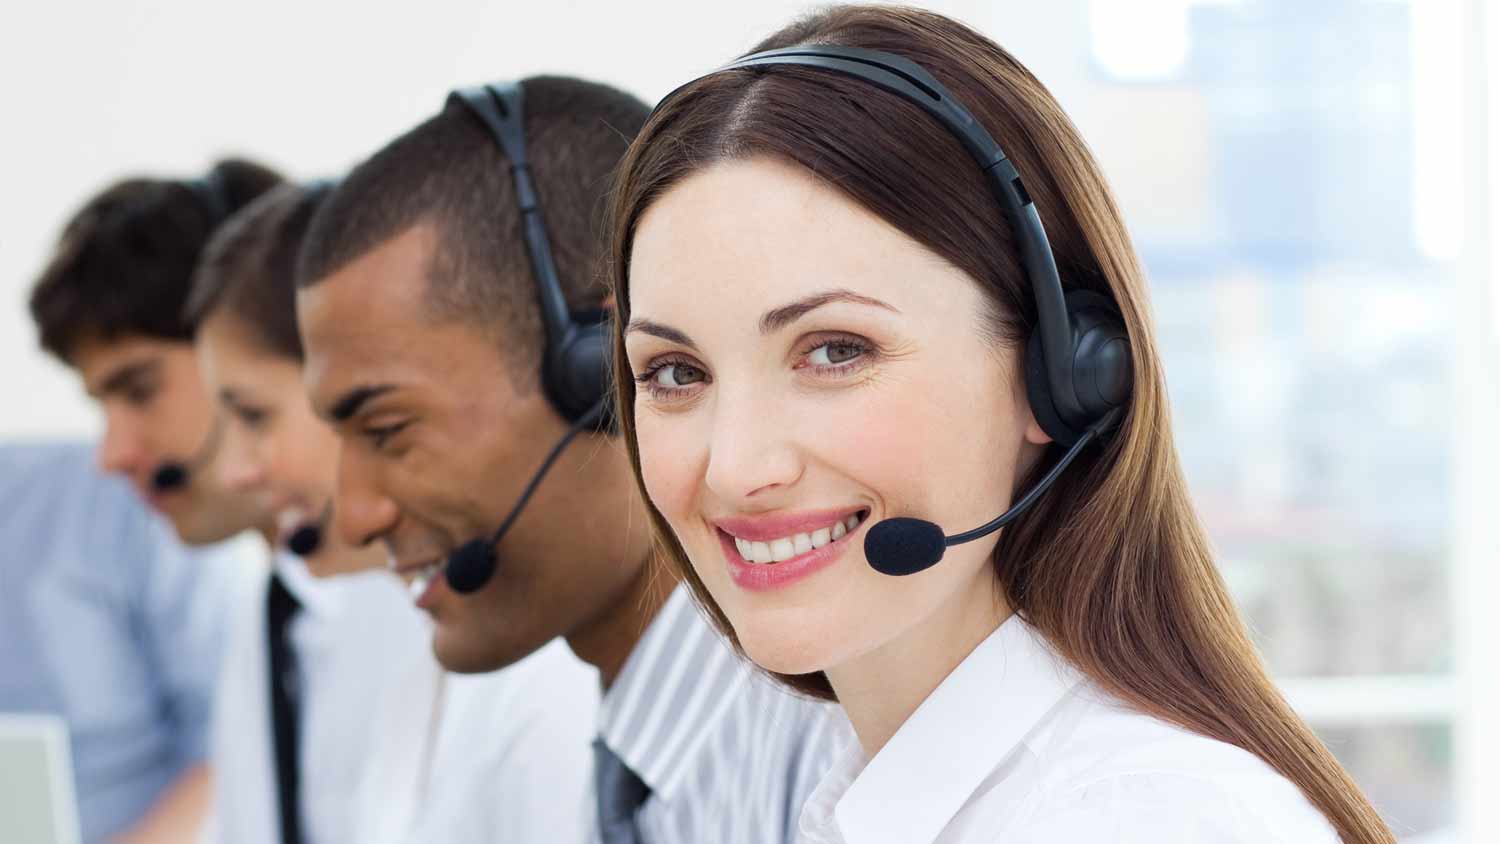 Star Sekretariat – Telefondienstleister, Kunden wissen zu schätzen